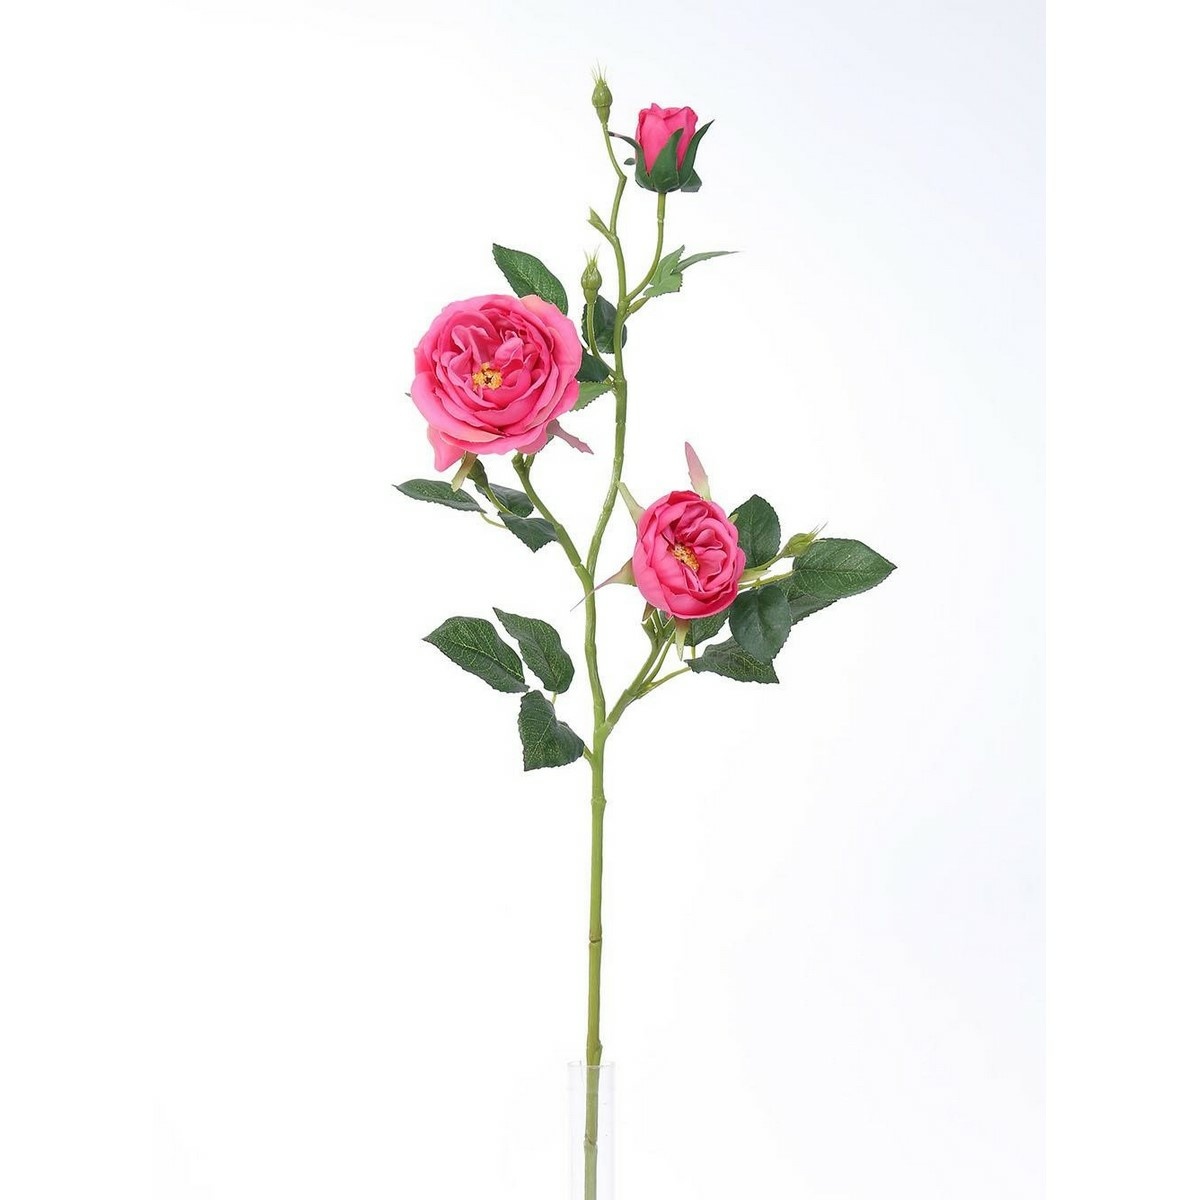 Umělá anglická růže růžová, 69 cm